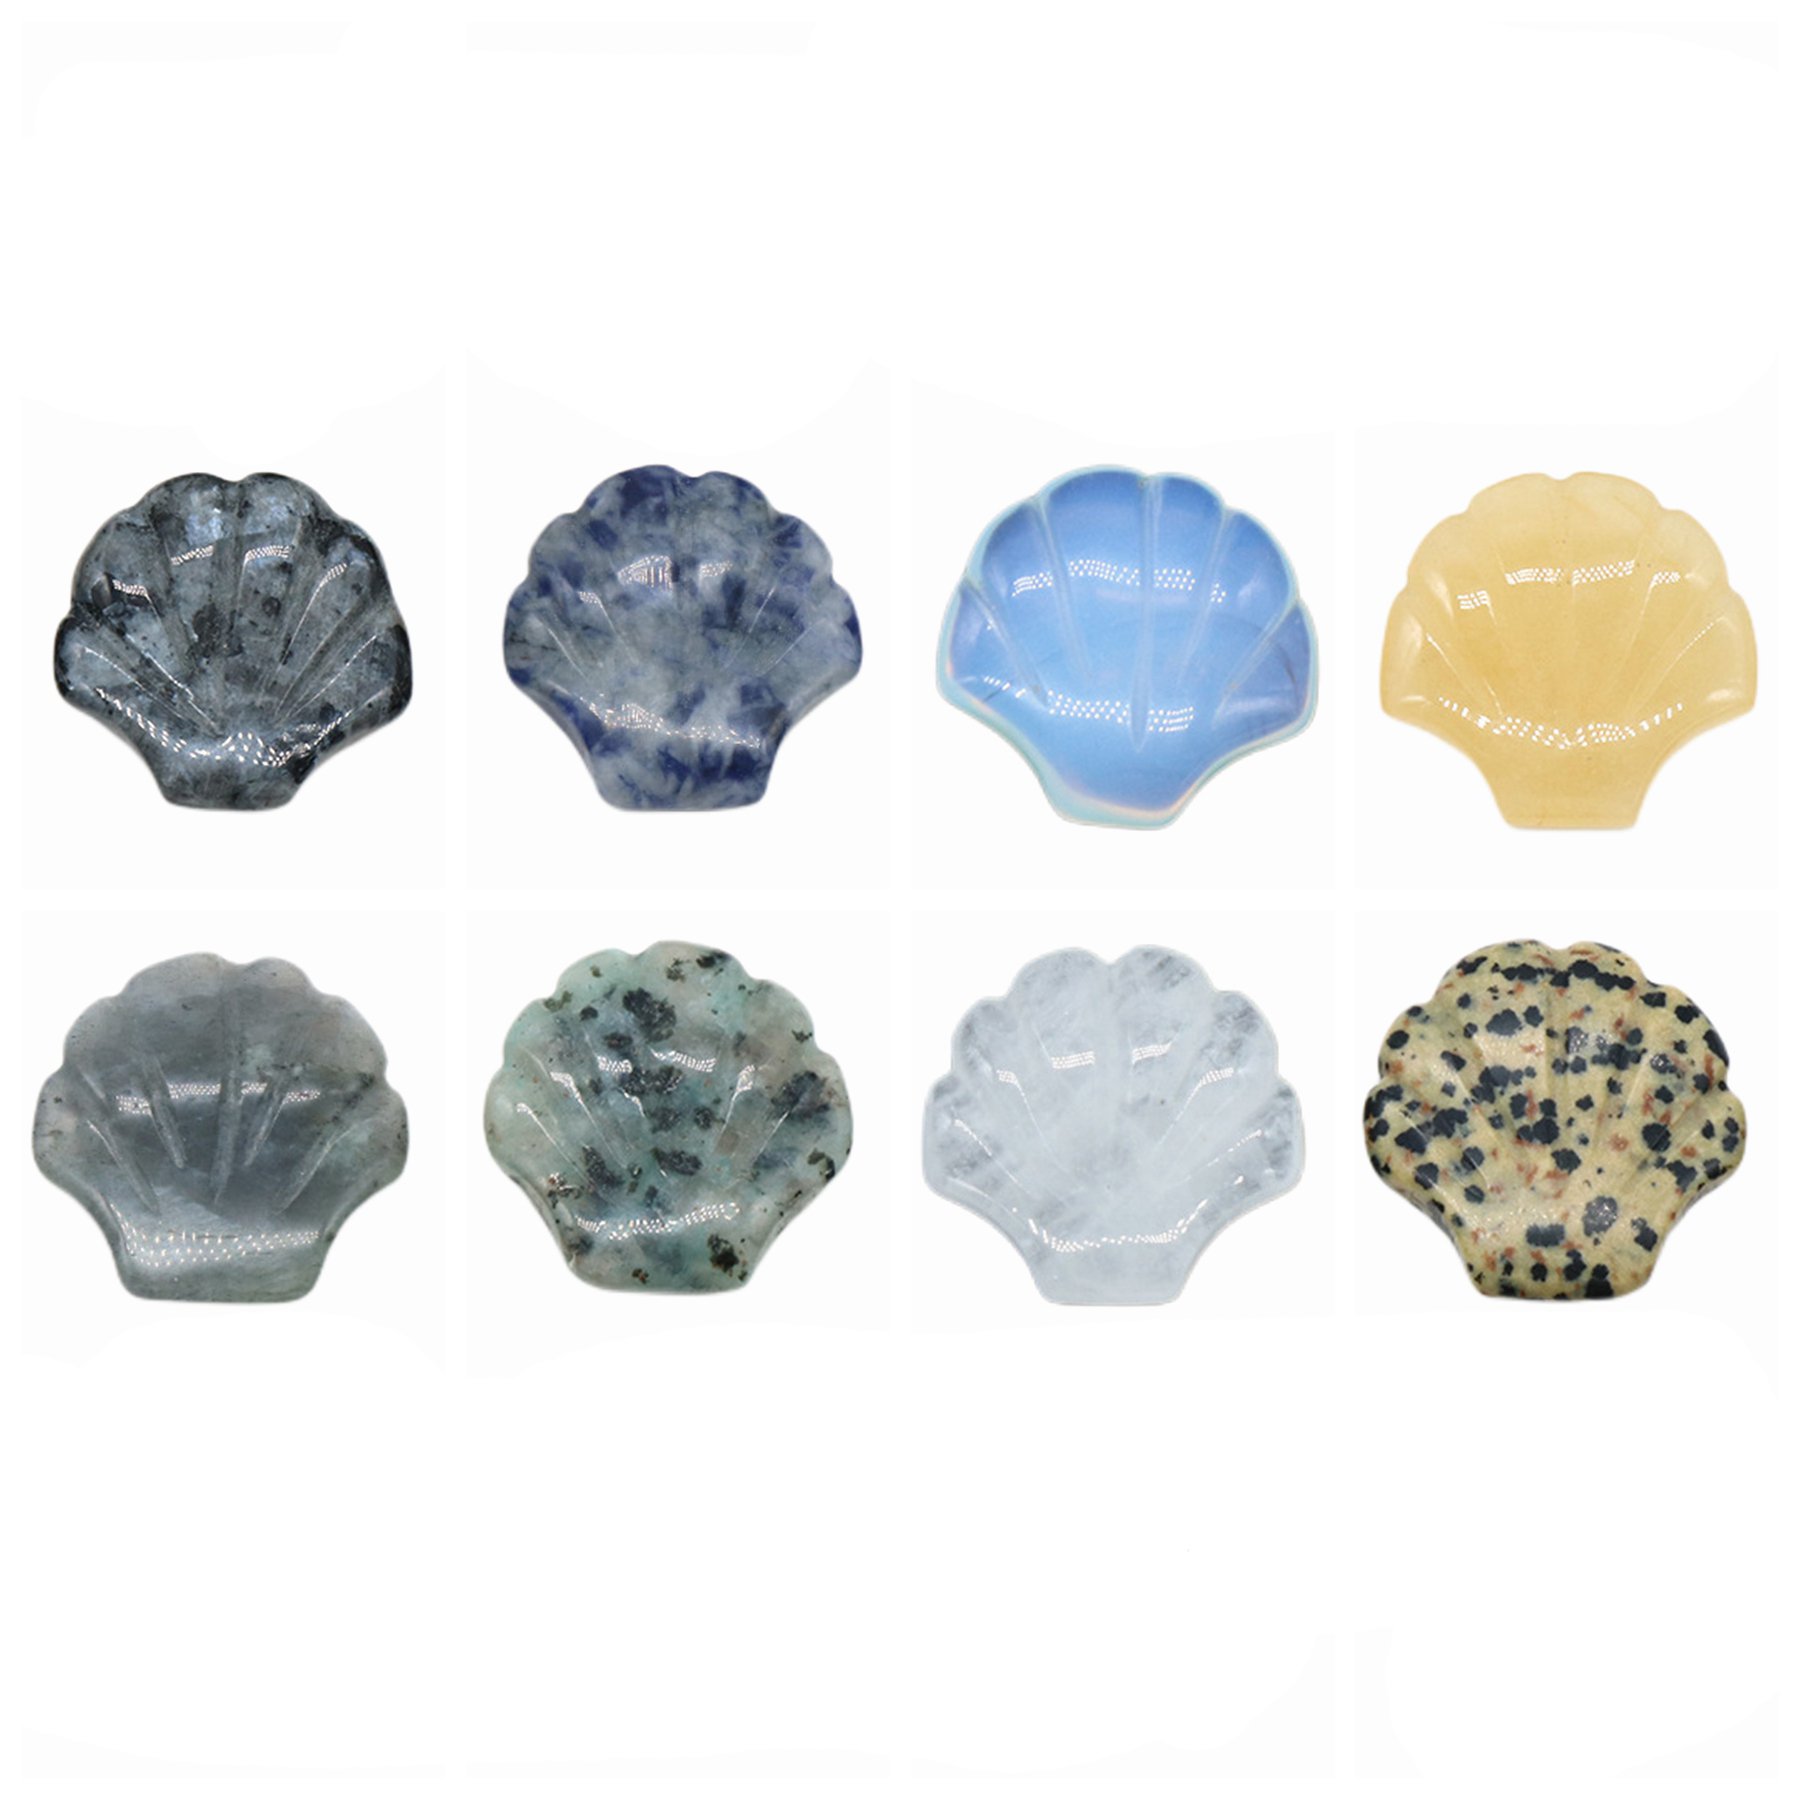 Nouvelle forme de pierre naturelle forme de pierre de pierre gemme cristal labradorite jades charmes de mode bijoux femmes hommes cadeaux